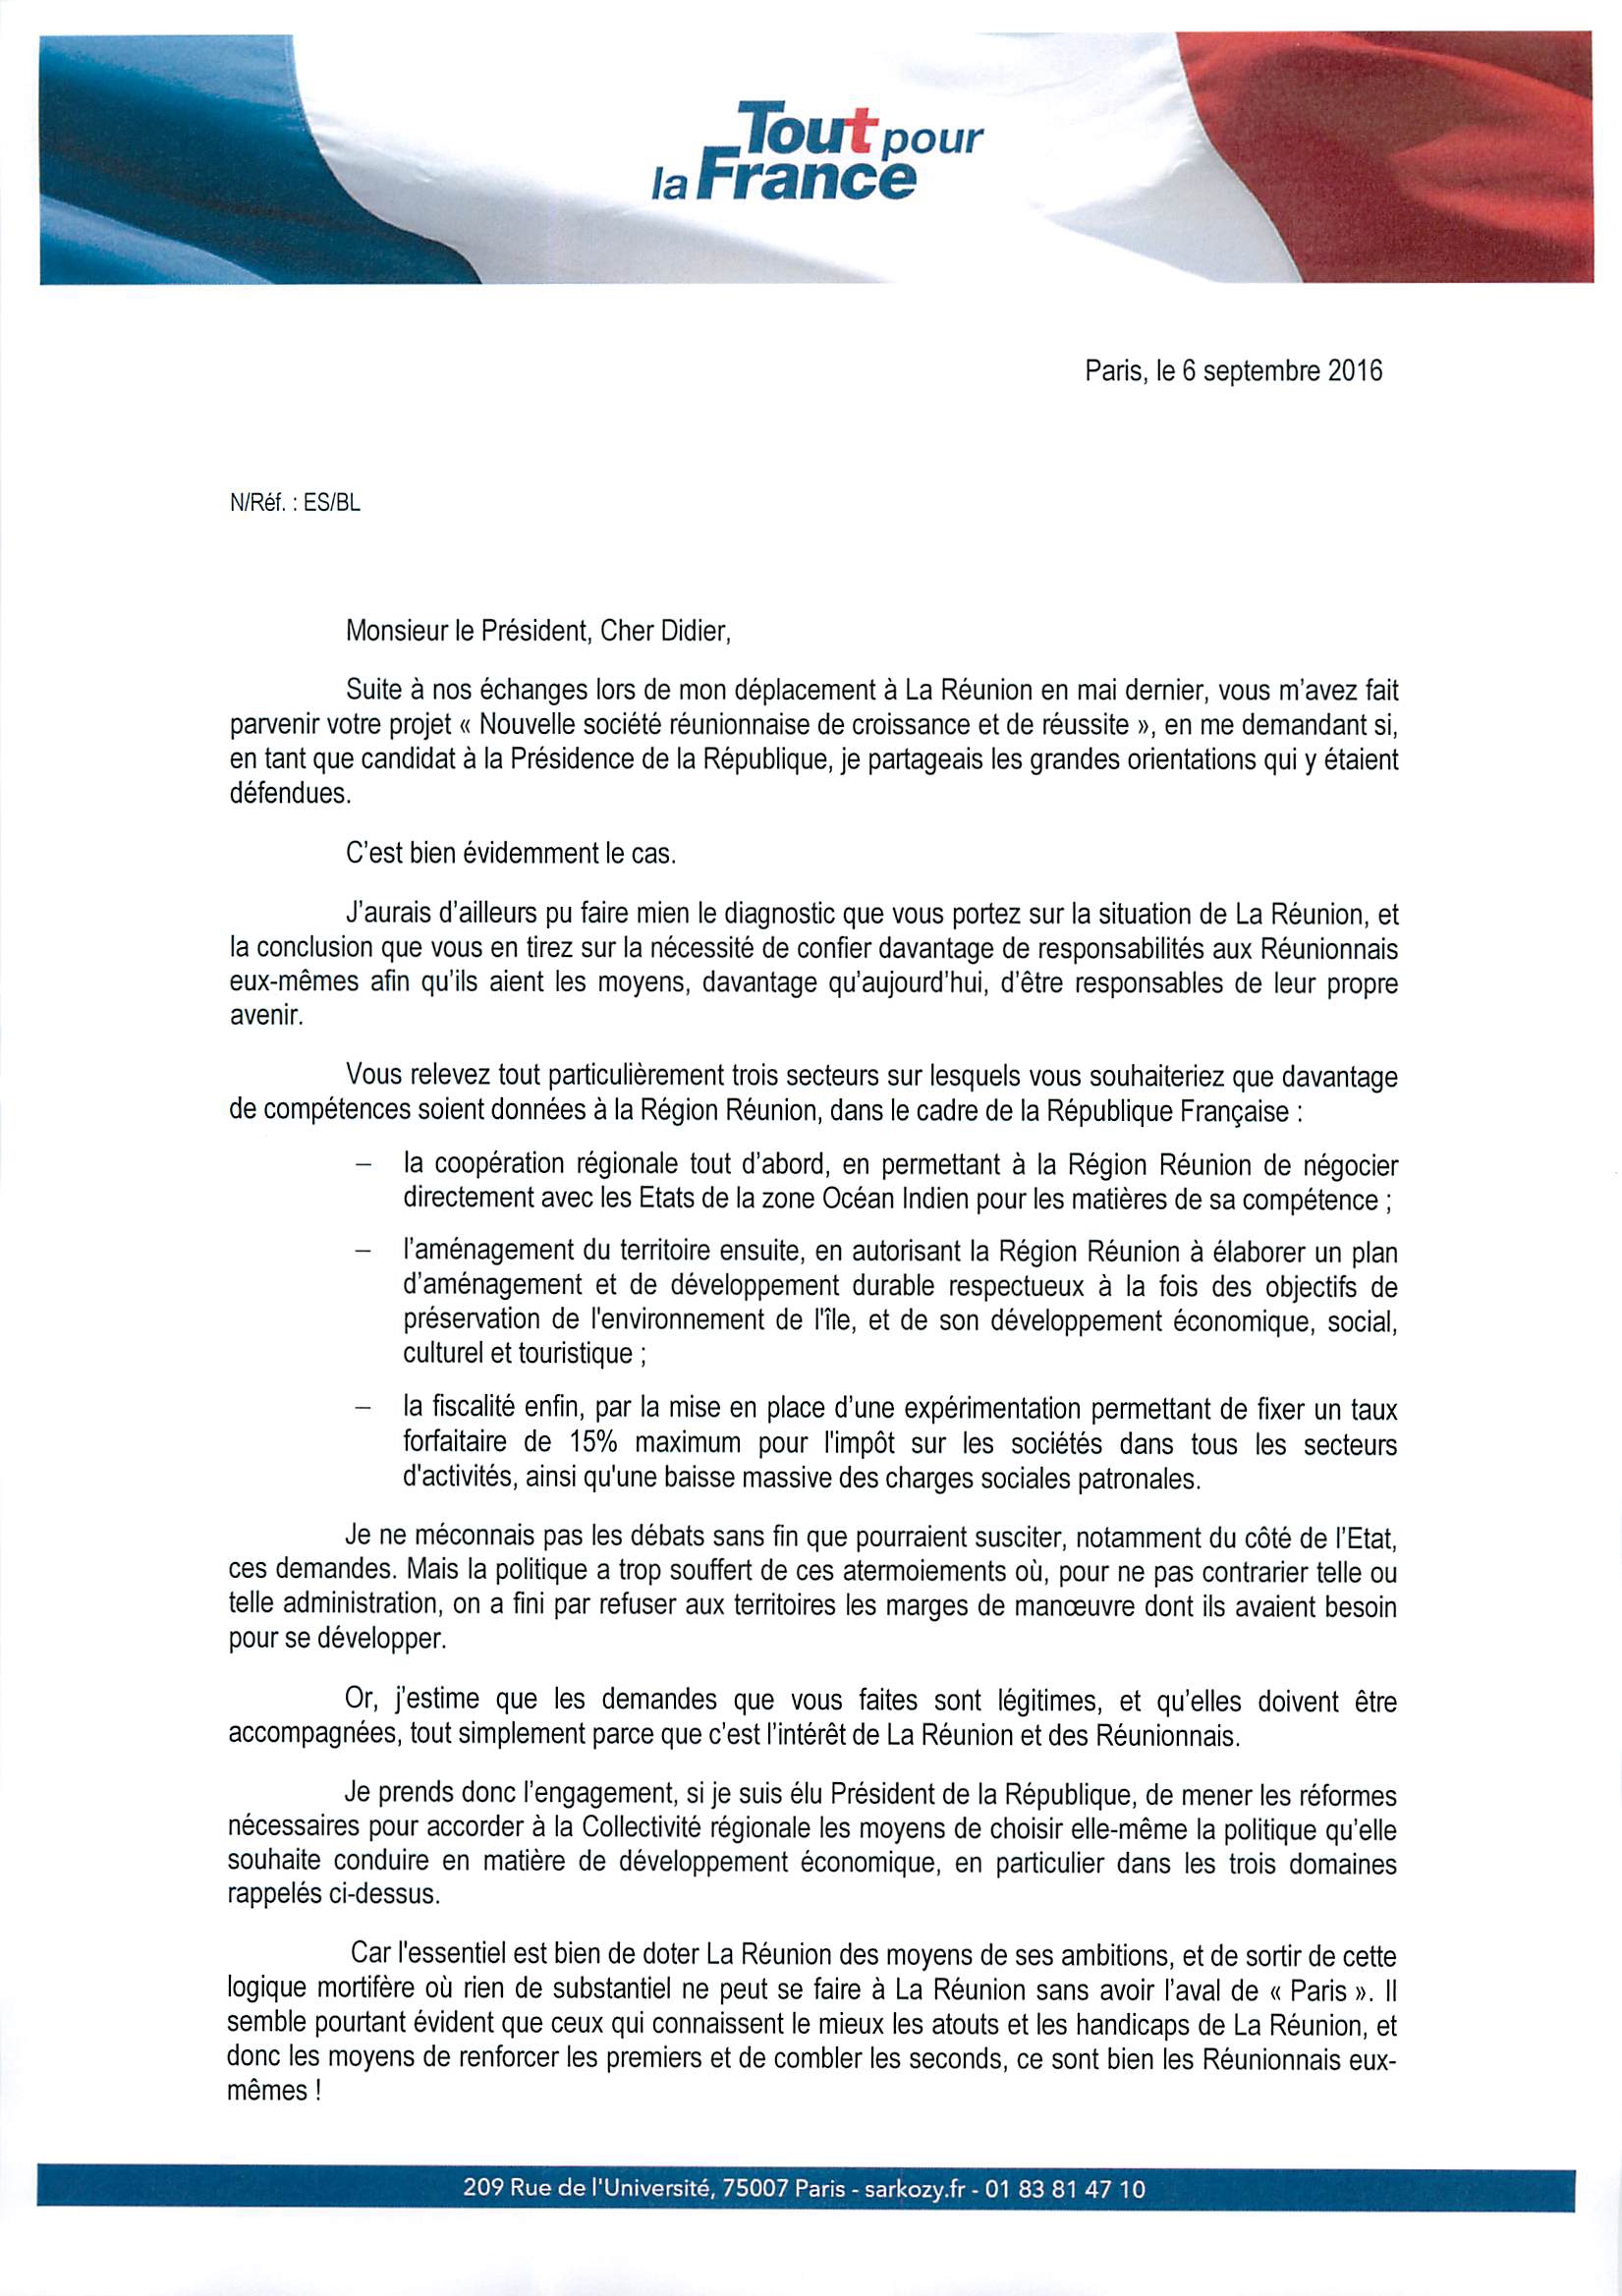 N.Sarkozy répond à D.Robert: Plus de responsabilités politiques accordées aux Réunionnais